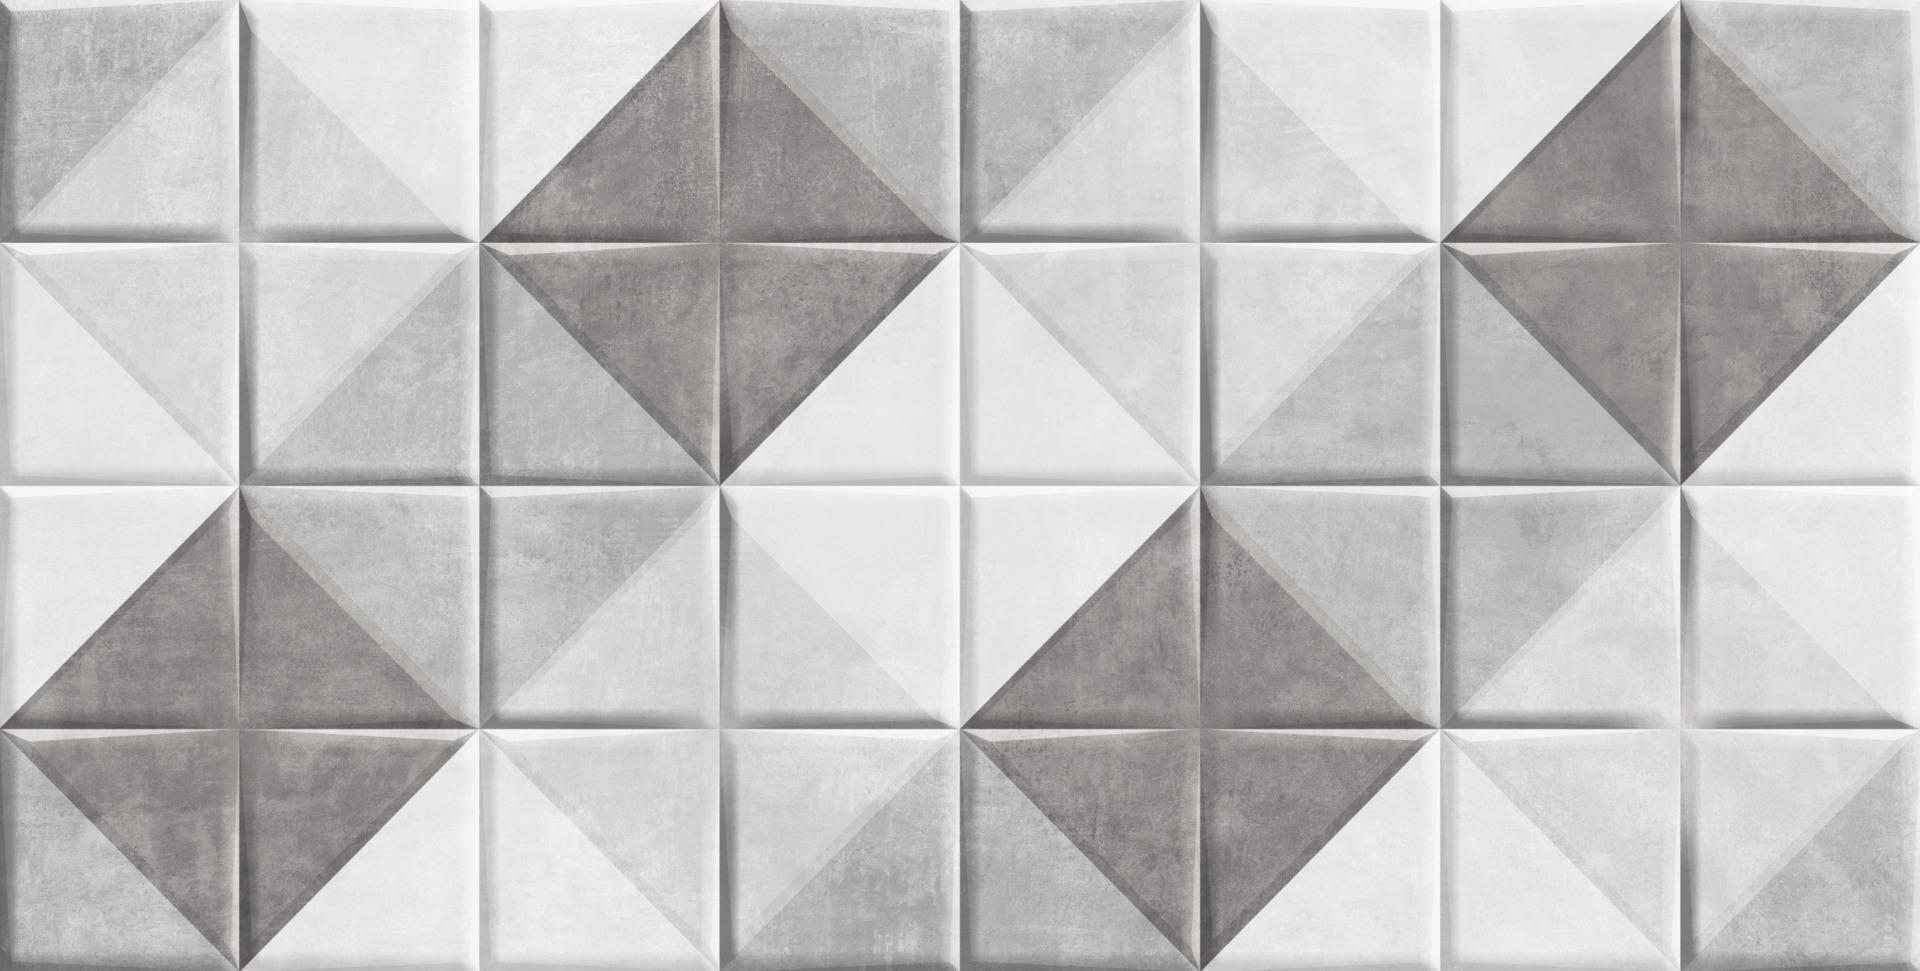 Accent Tiles for Bathroom Tiles, Living Room Tiles, Kitchen Tiles, Bedroom Tiles, Accent Tiles, Automotive Tiles, Bar/Restaurant, Commercial/Office